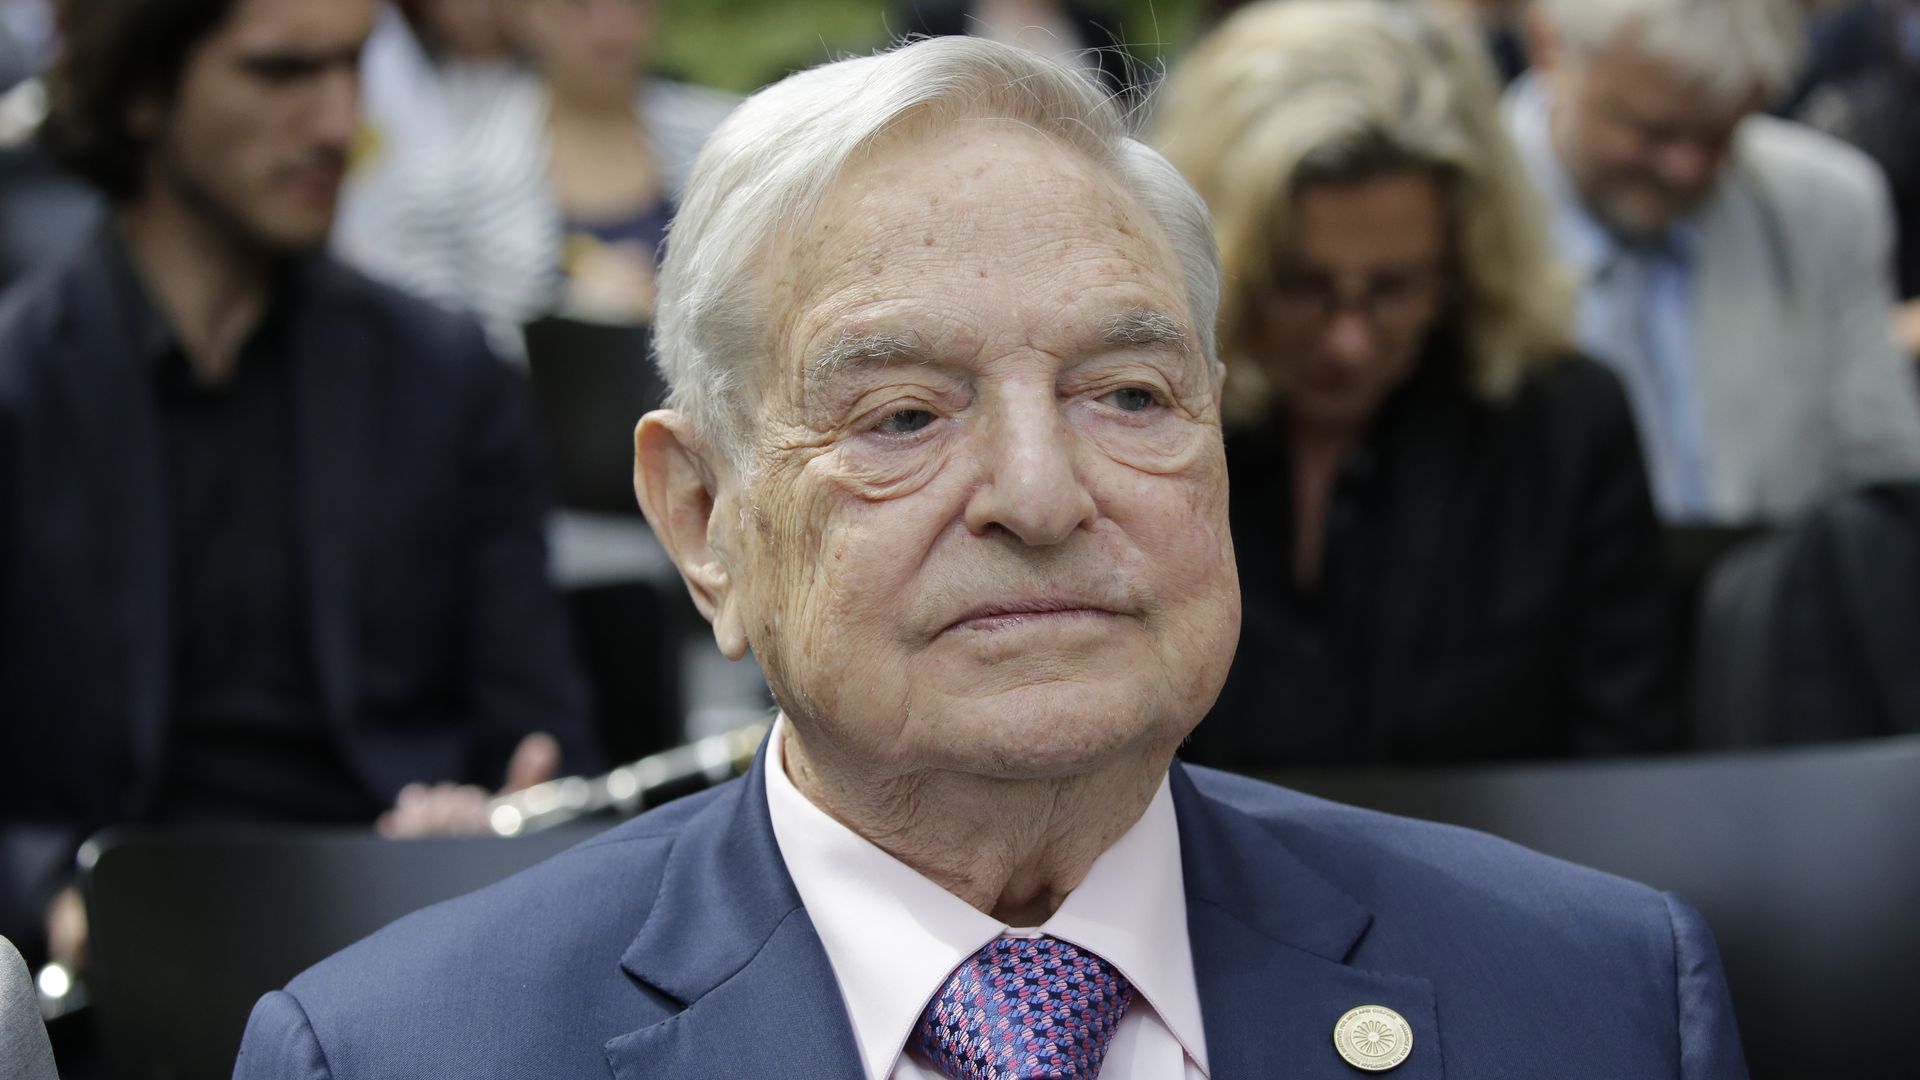 A headshot of George Soros.